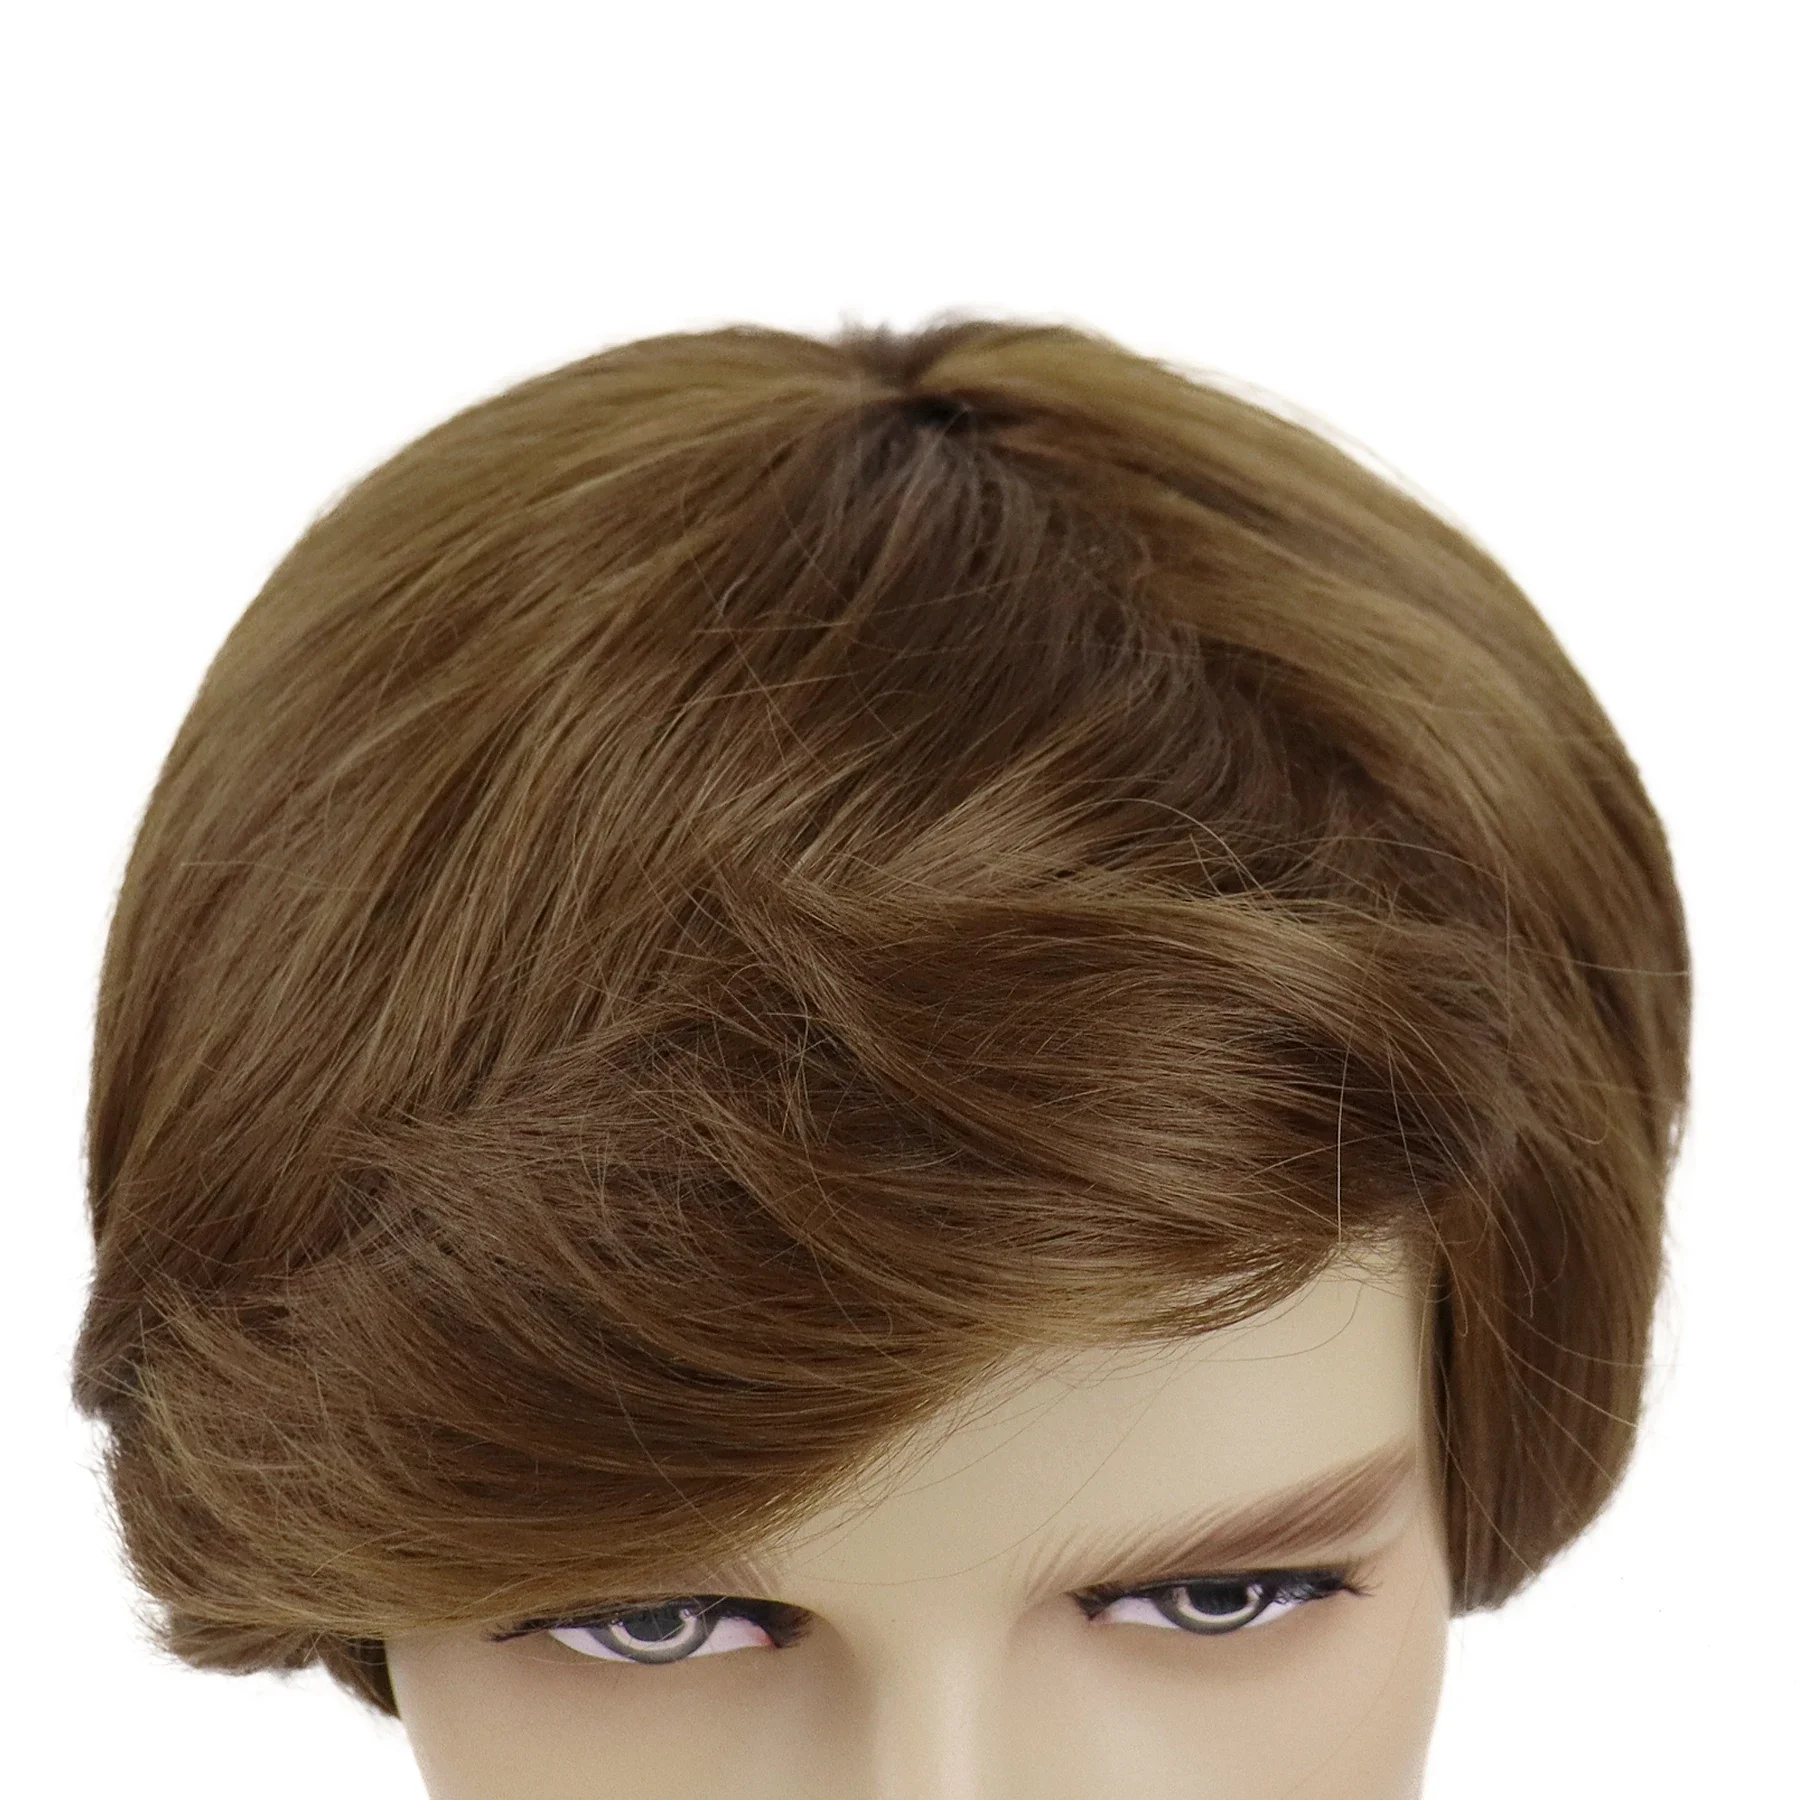 GNIMEGIL Синтетические парики с короткими волосами для мужчин Коричневый парик Натуральные прически Кудрявые с челкой Красивая замена Косплей Парик Костюм